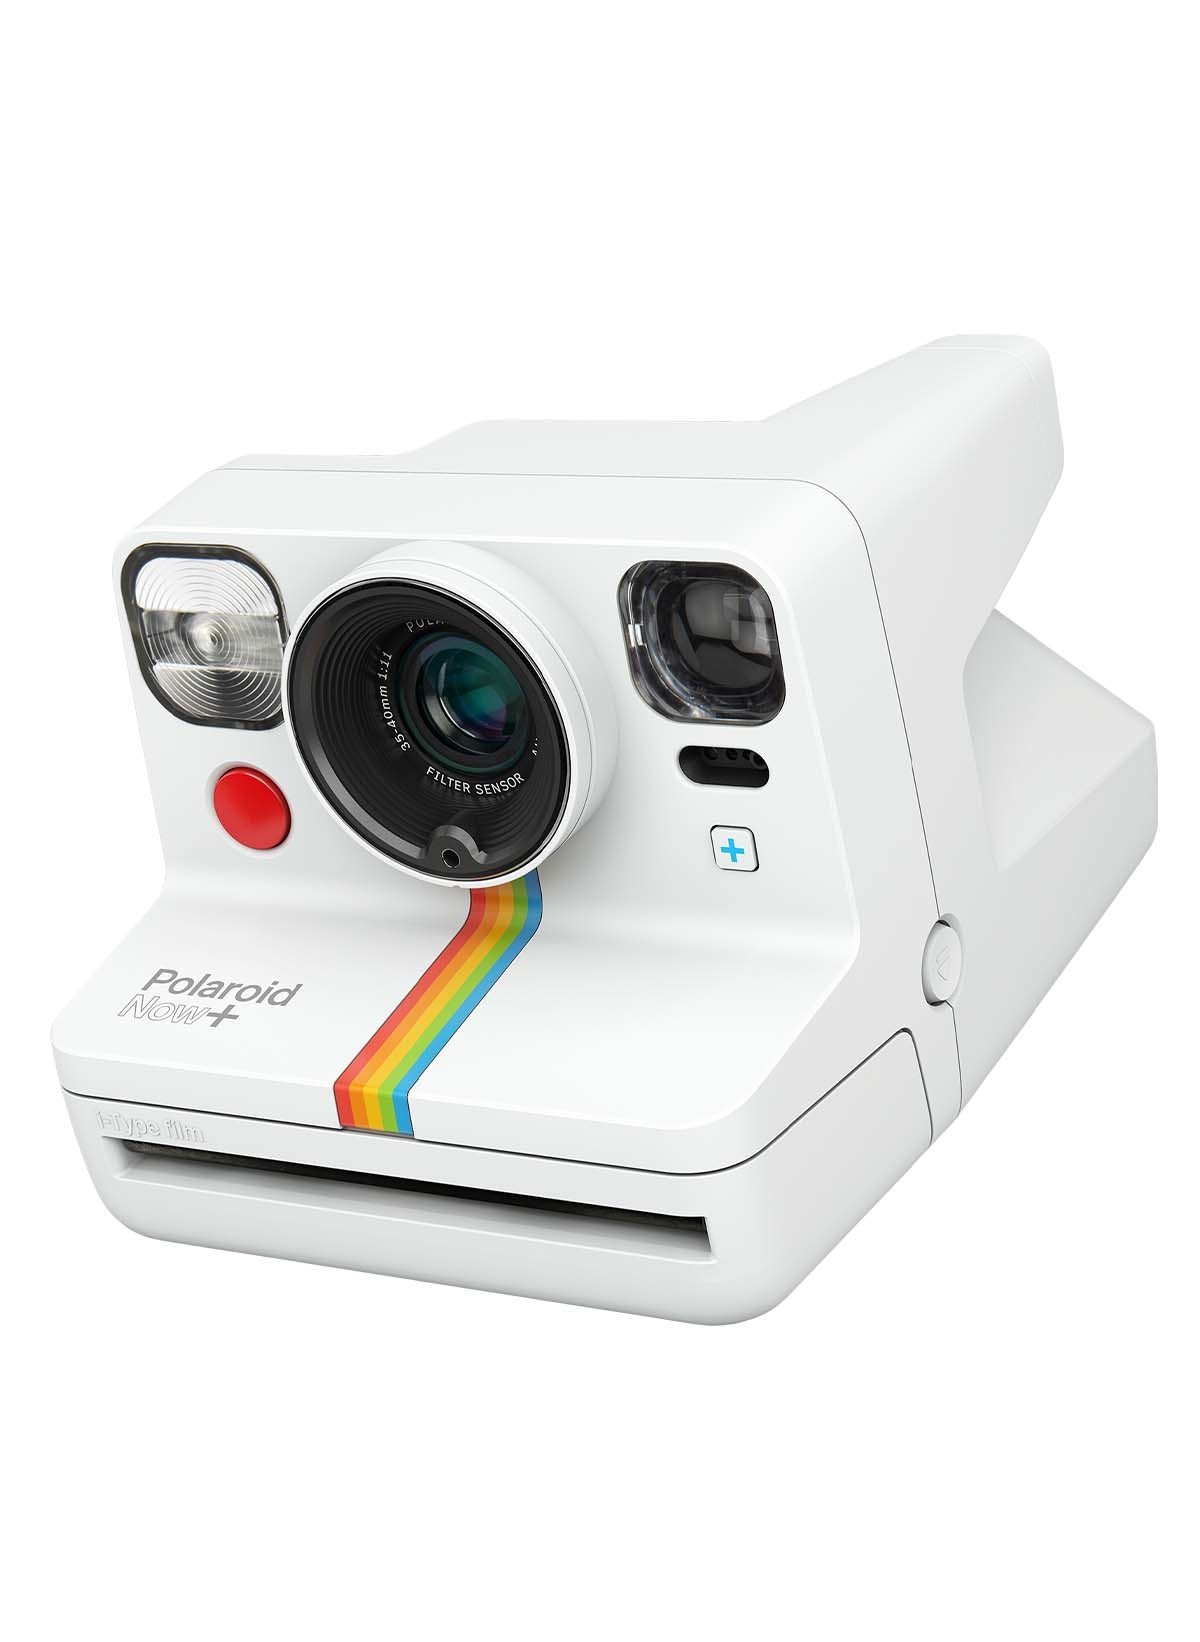 Polaroid NOW+ i-Type Kamera weiß